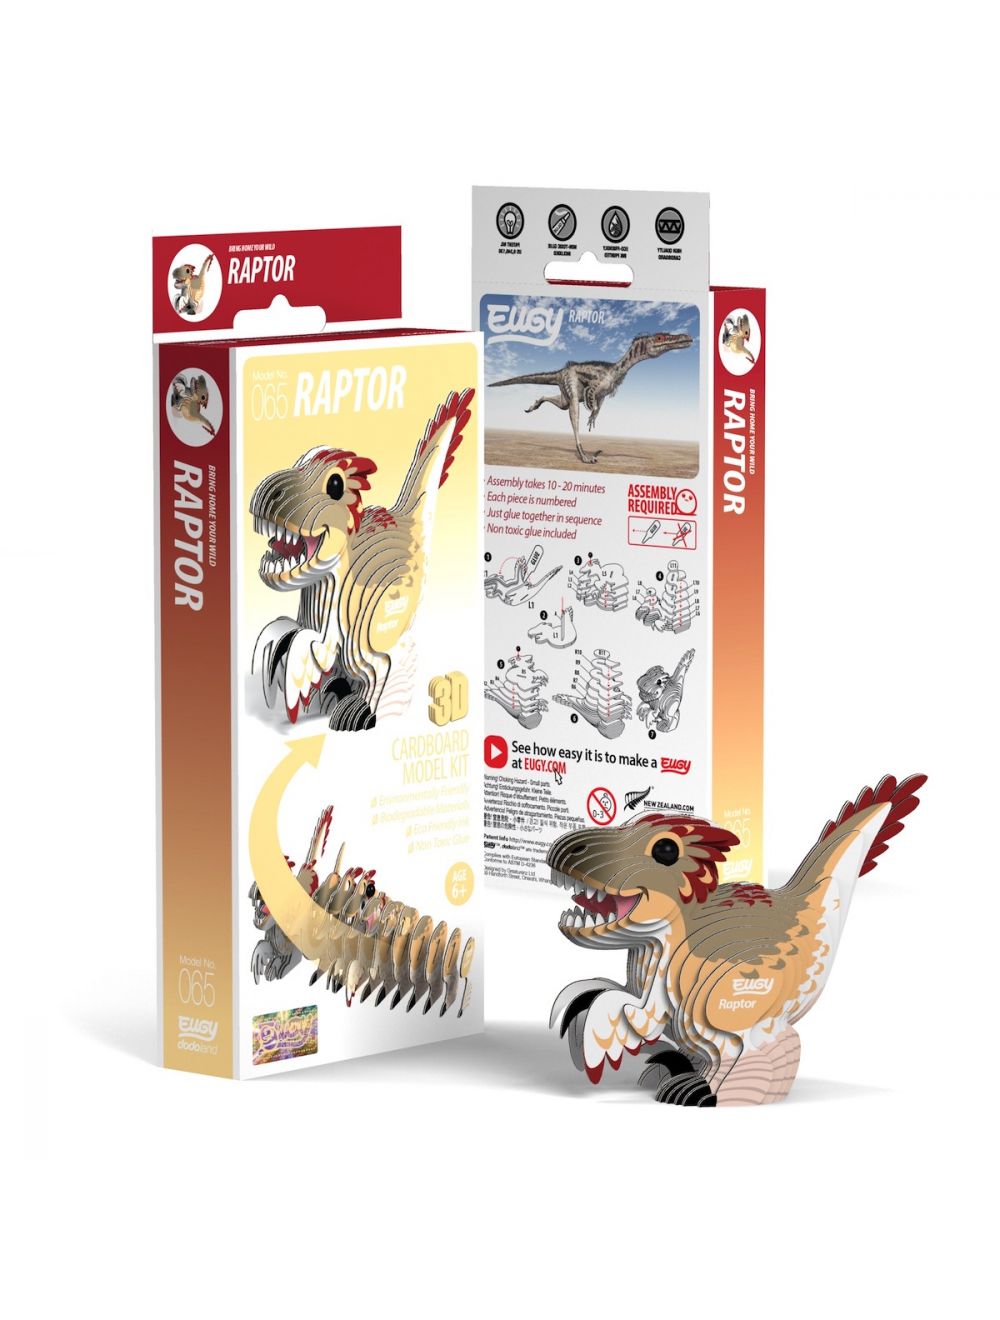 Dodoland - Eugy Velociraptor